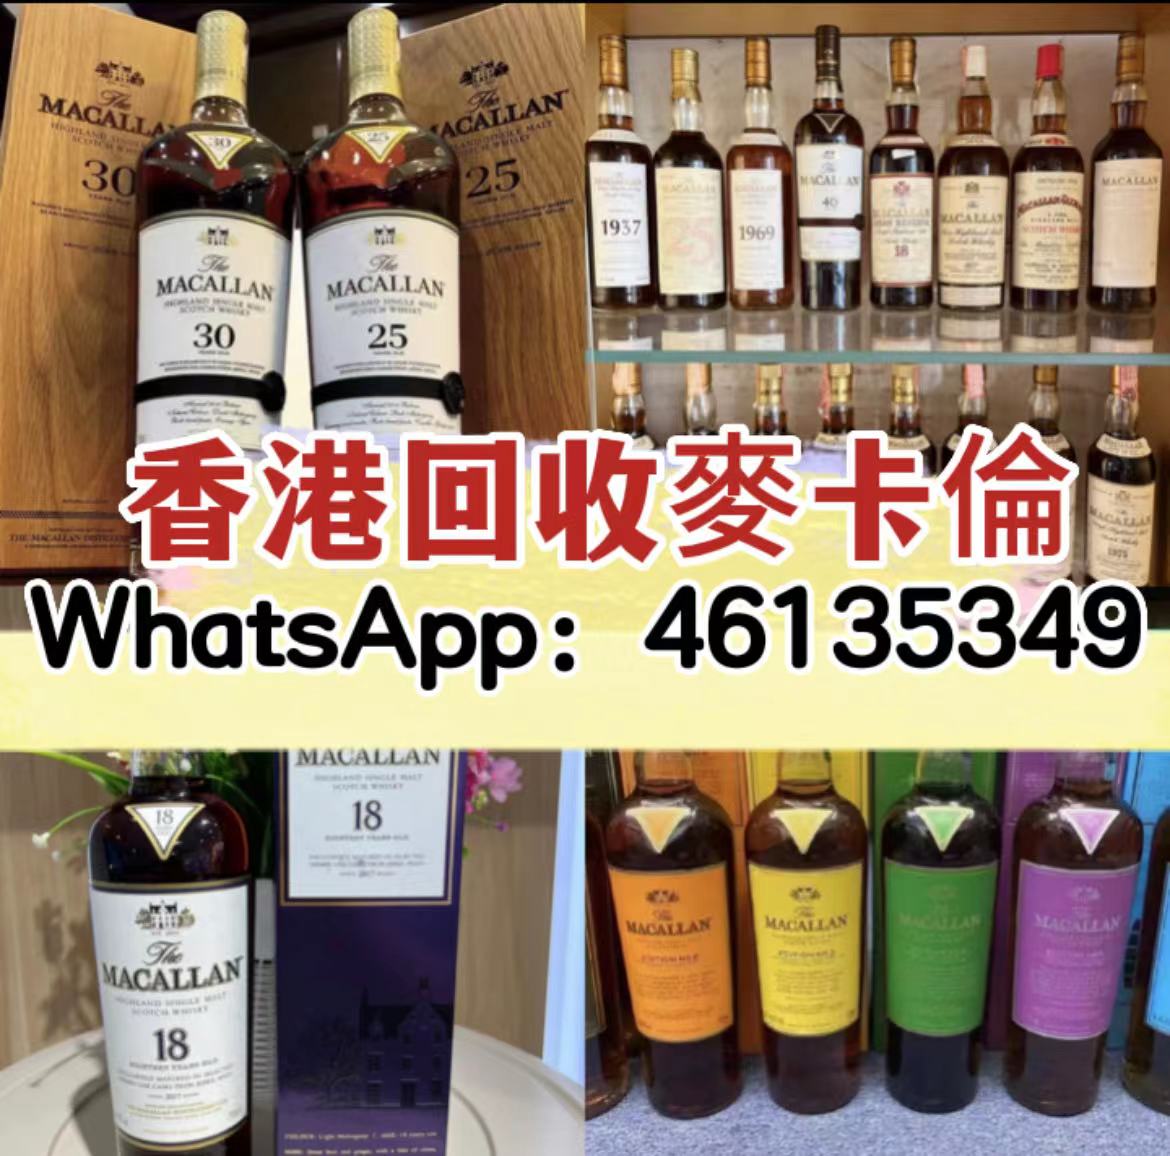 澳門收酒 WeChat meu68573297 